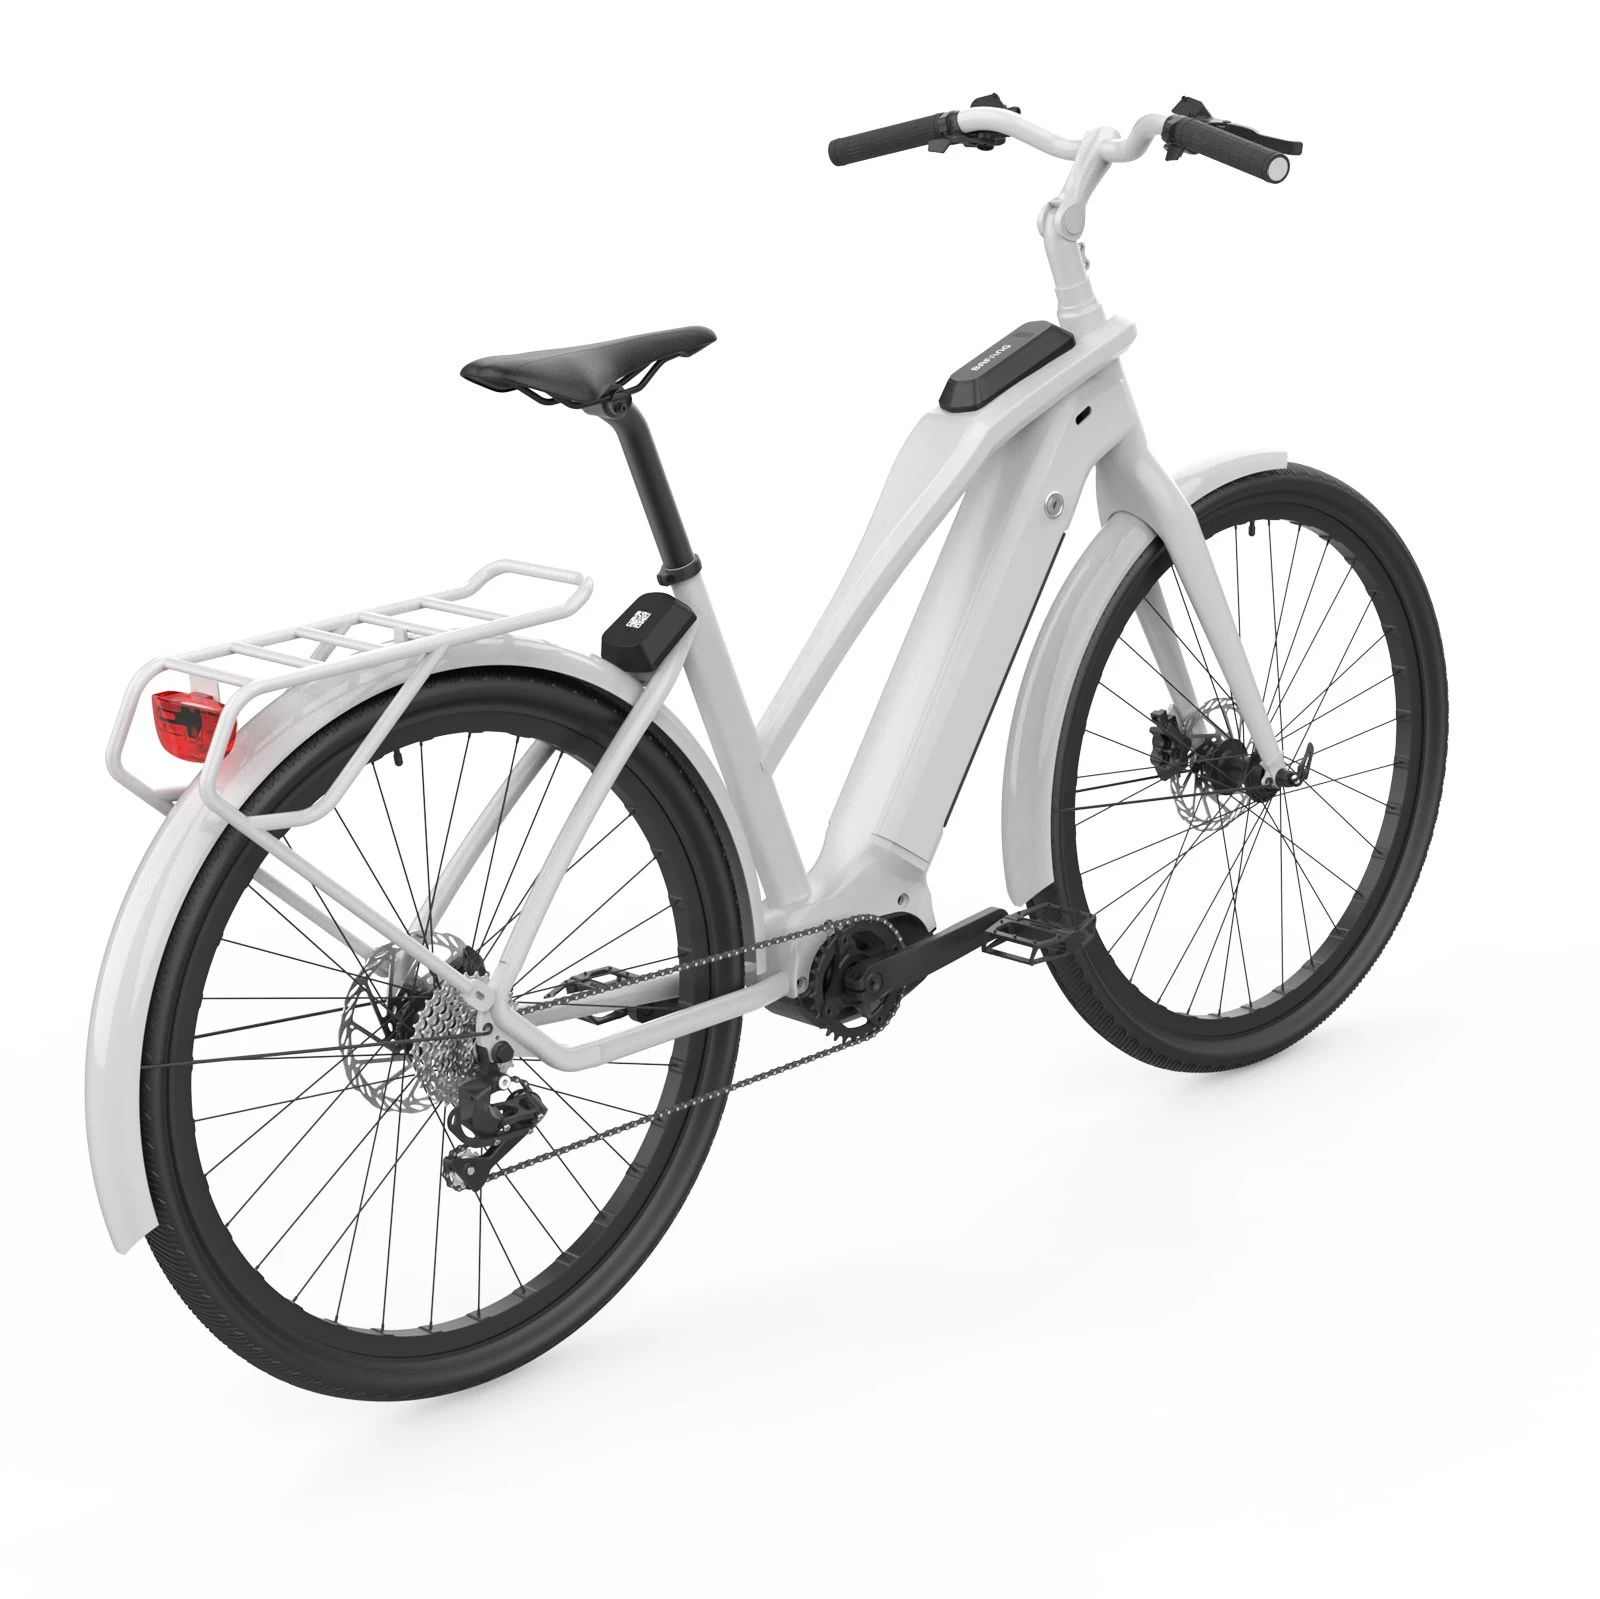 자전거 공유 시스템용 M136 IoT 장치 대여 자전거 전자 자전거 QR GPS 추적 시스템으로 잠금 해제 및 잠금